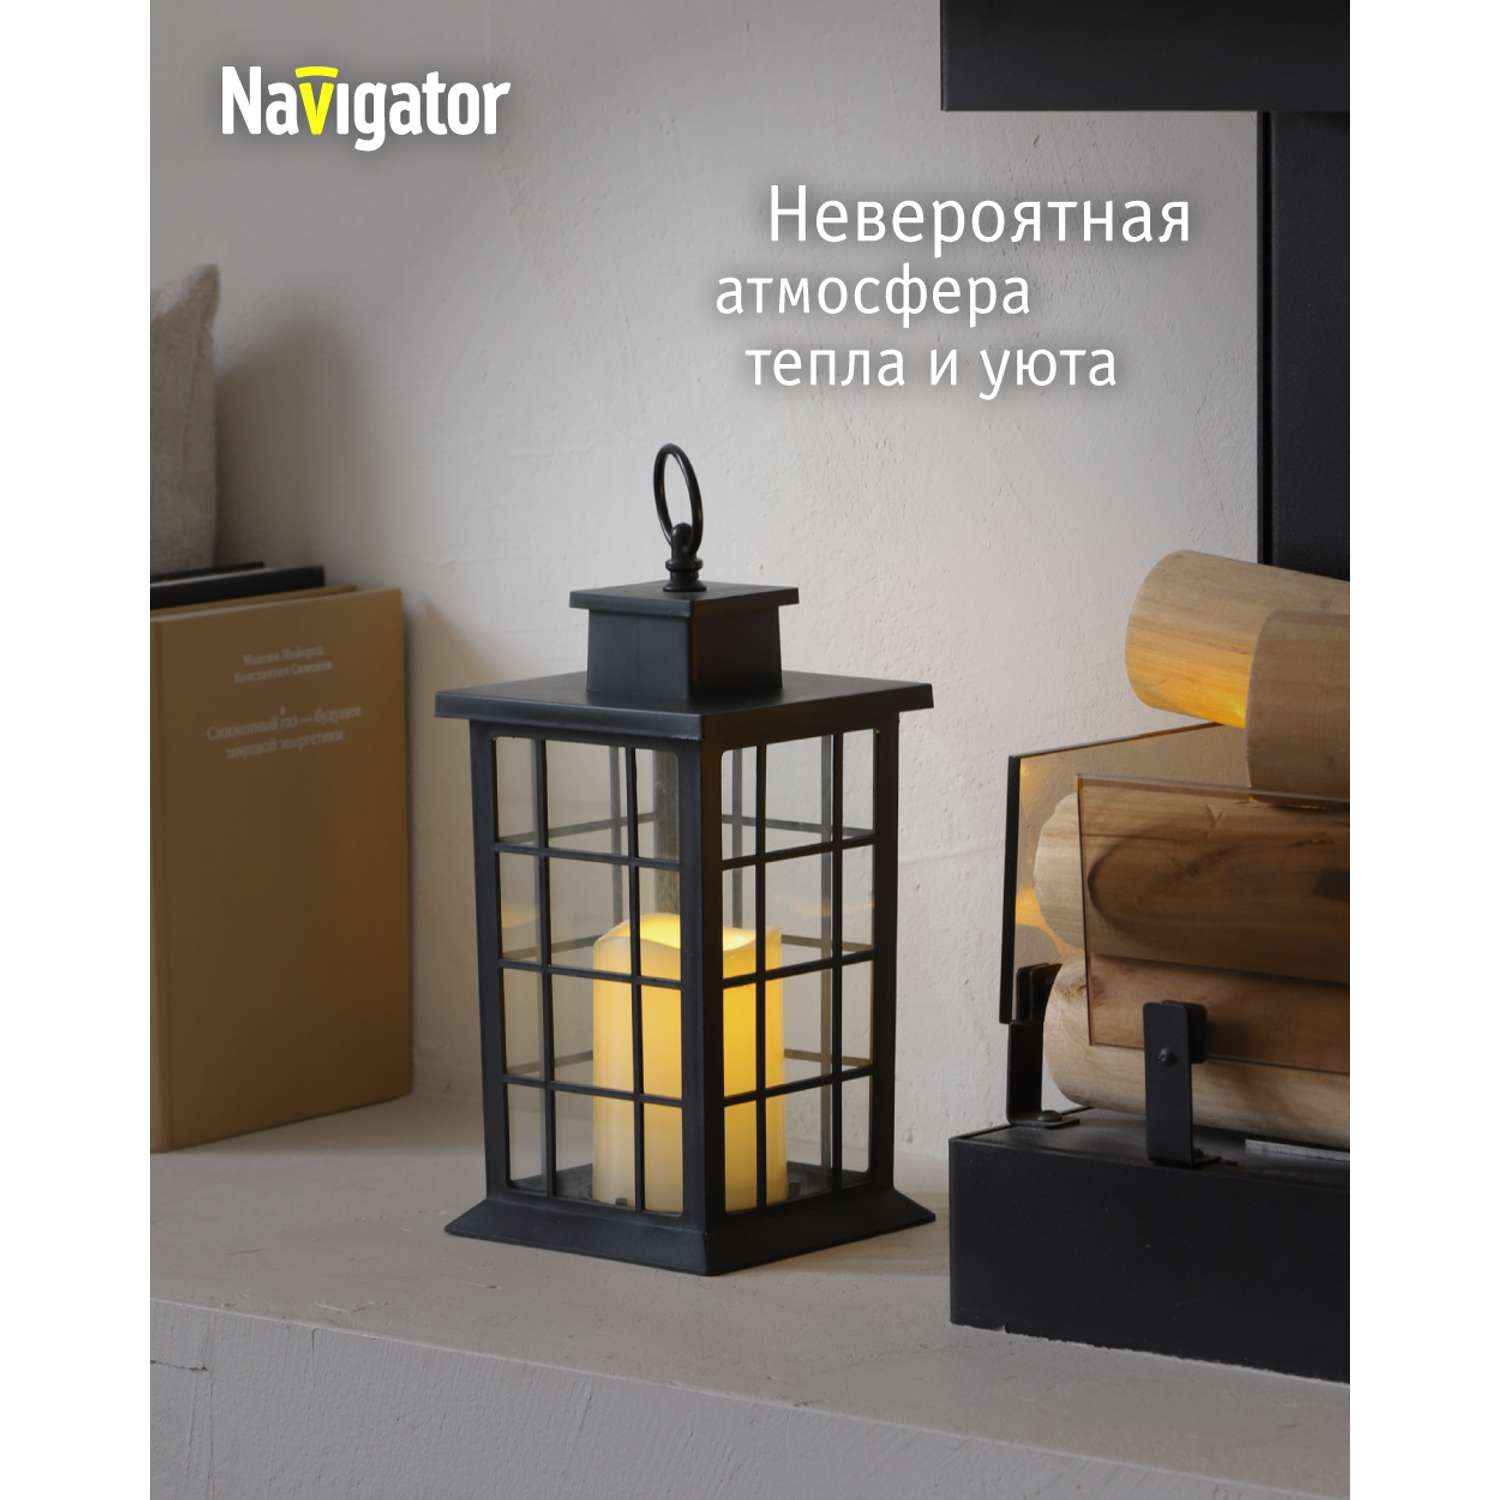 Декоративный светильник-ночник NaVigator светодиодный для детской комнаты узор черная решетка - фото 2